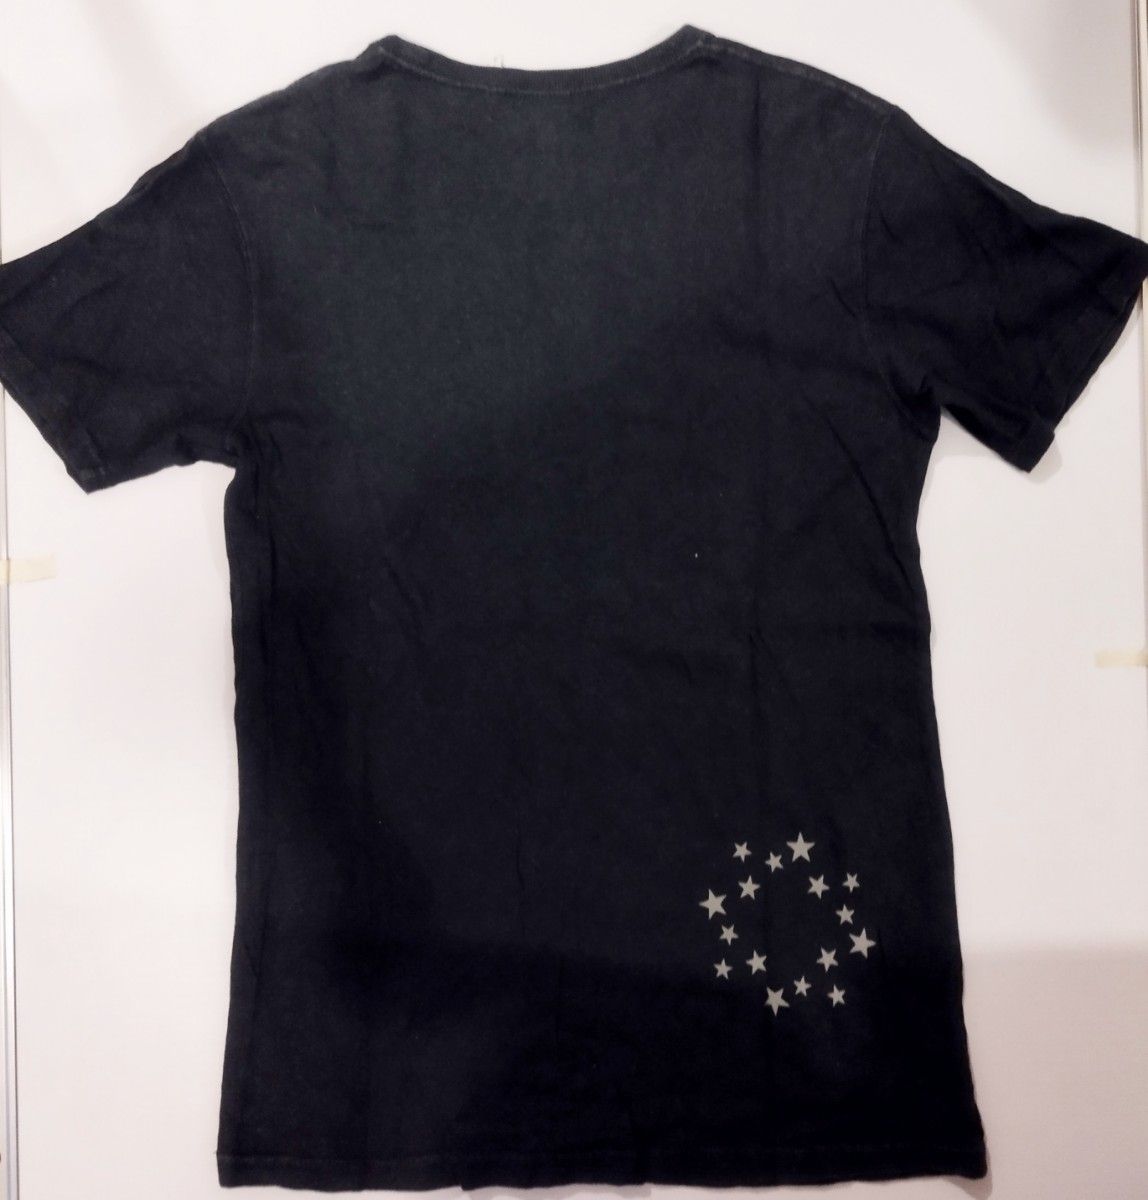 ブラック Sサイズ Phatee Tシャツ ファッティ ヘンプ カットソー 半袖 hemp